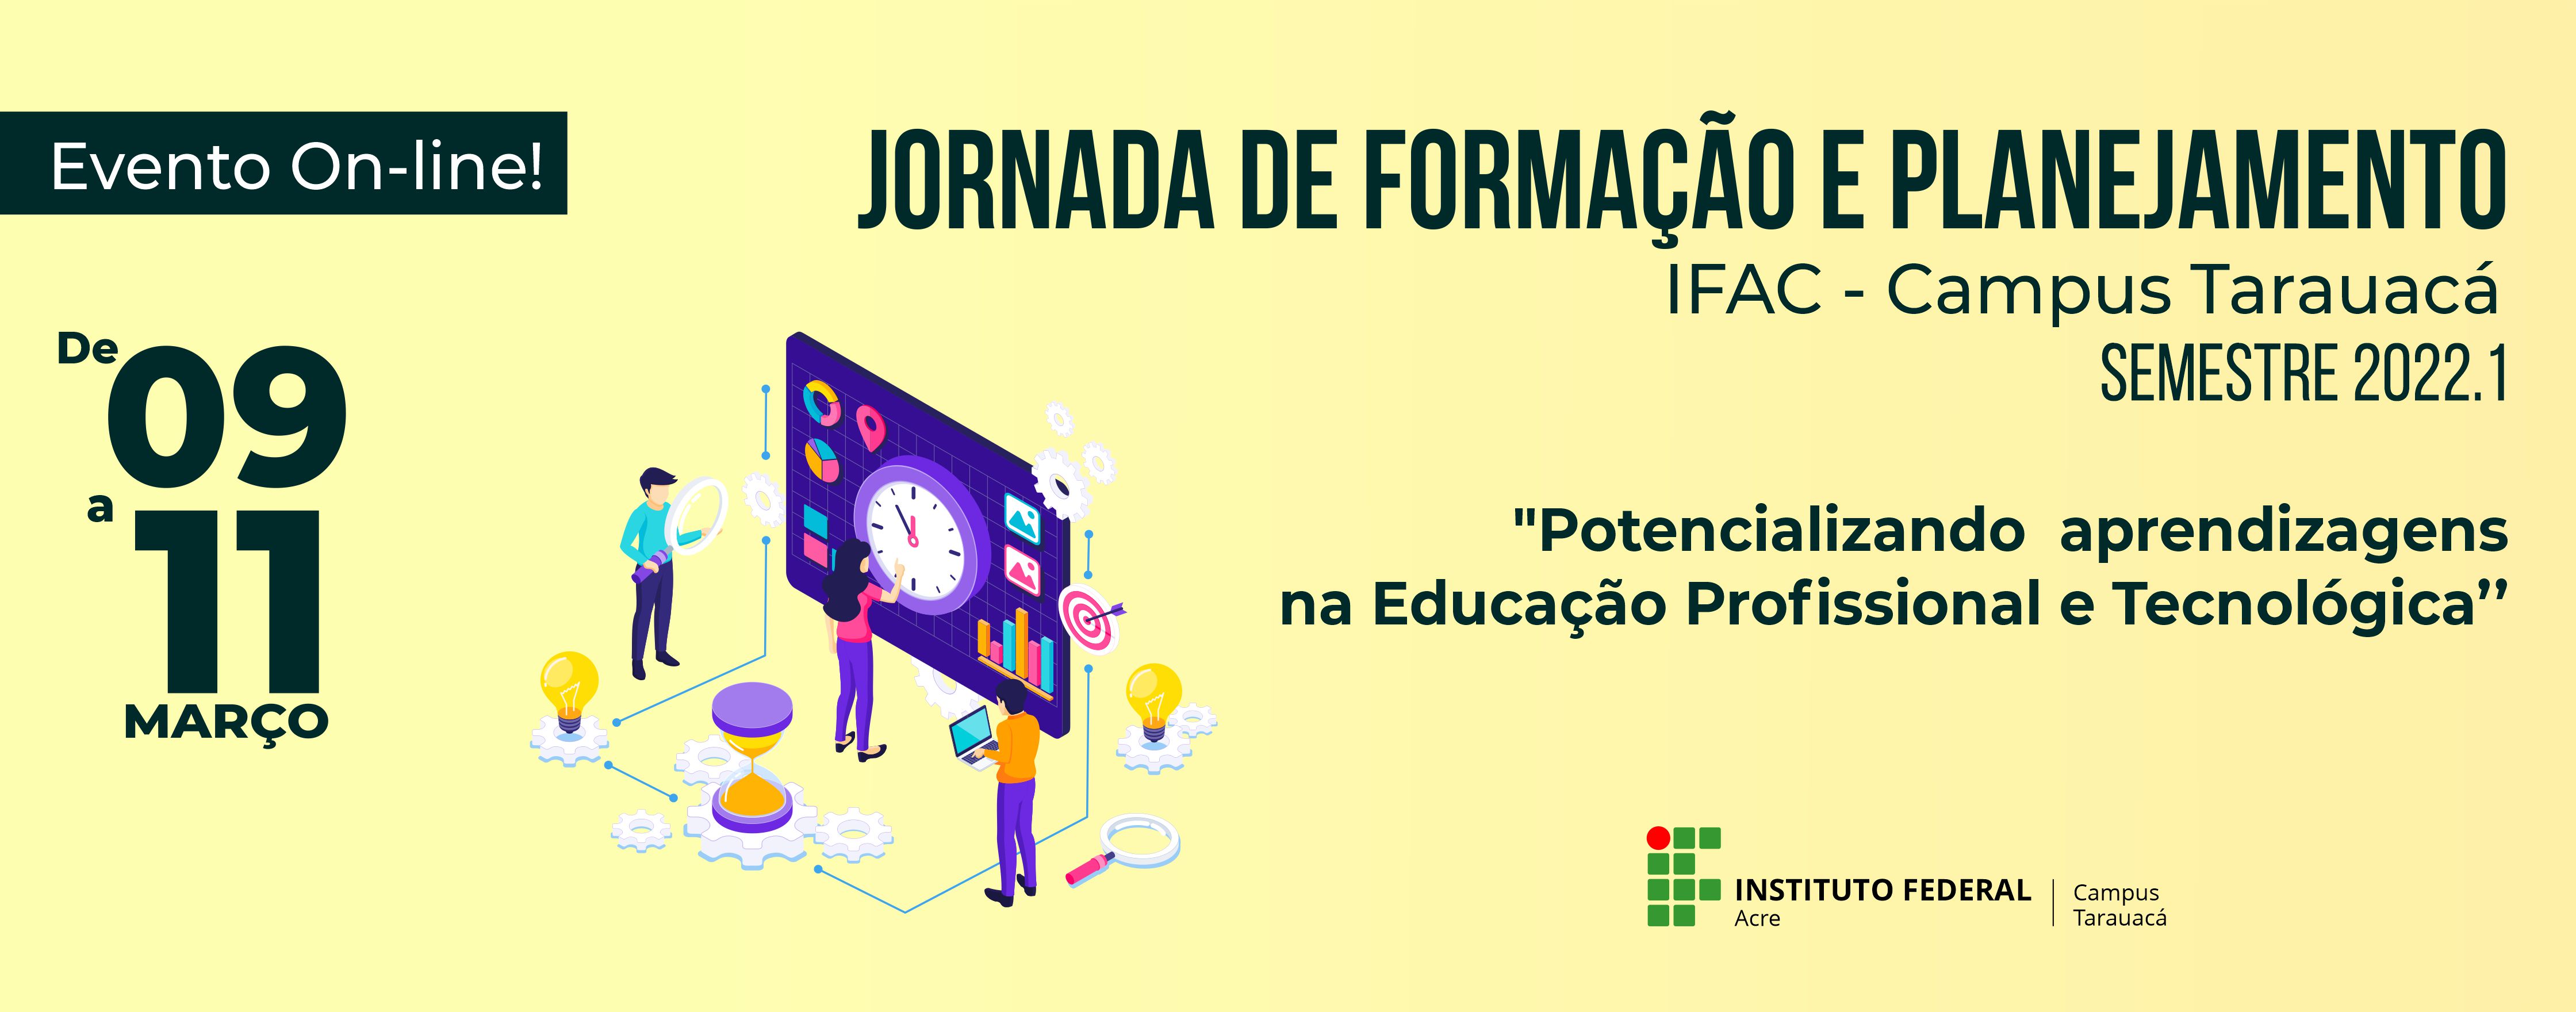 banner do Jornada de Formação e Planejamento IFAC Campus Tarauacá semestre 2022.1